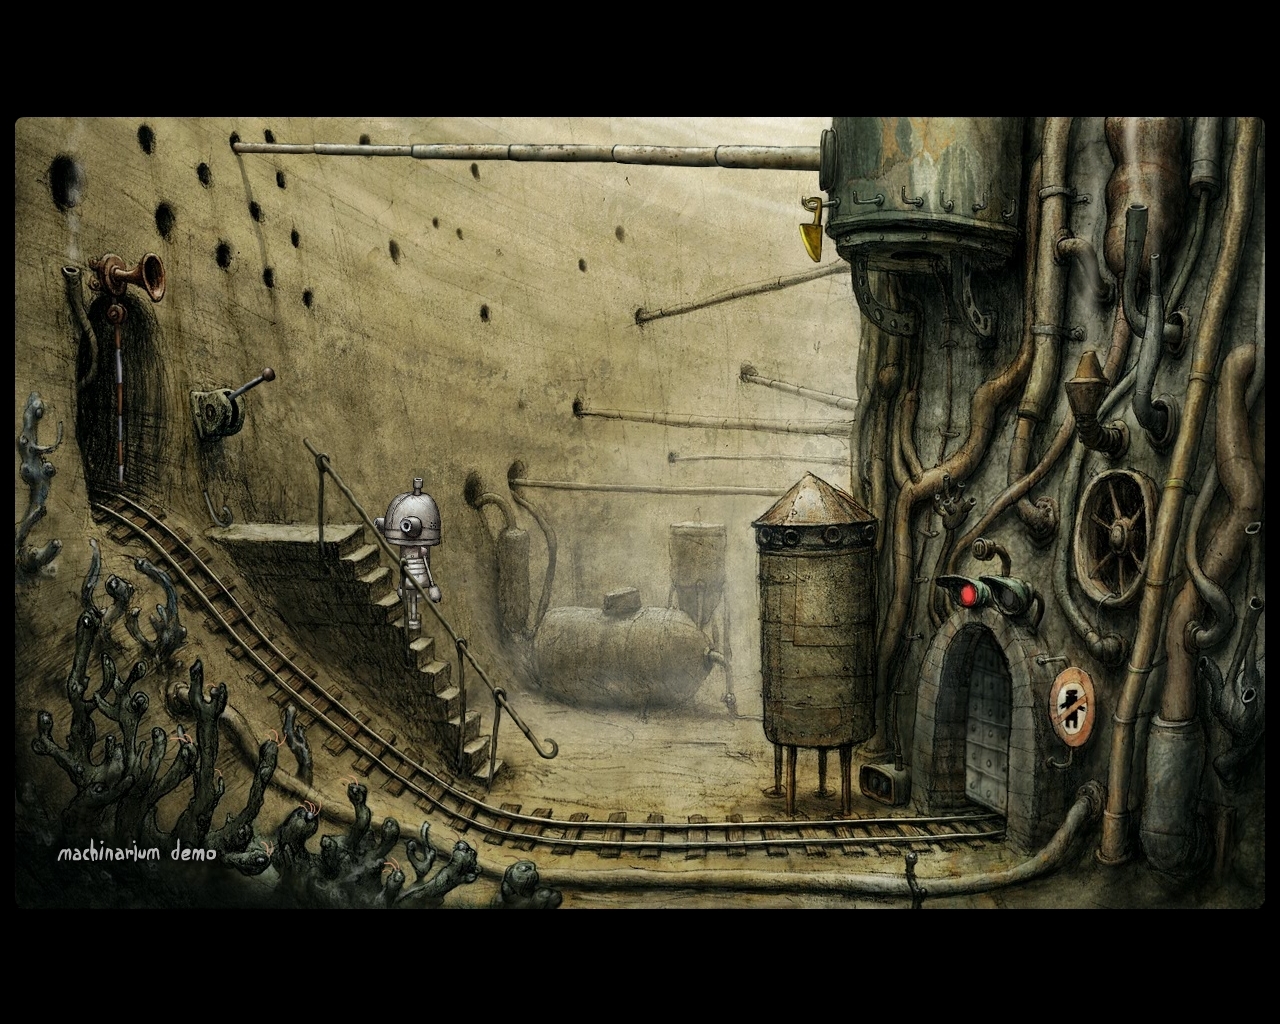 Скриншот из игры Machinarium под номером 2